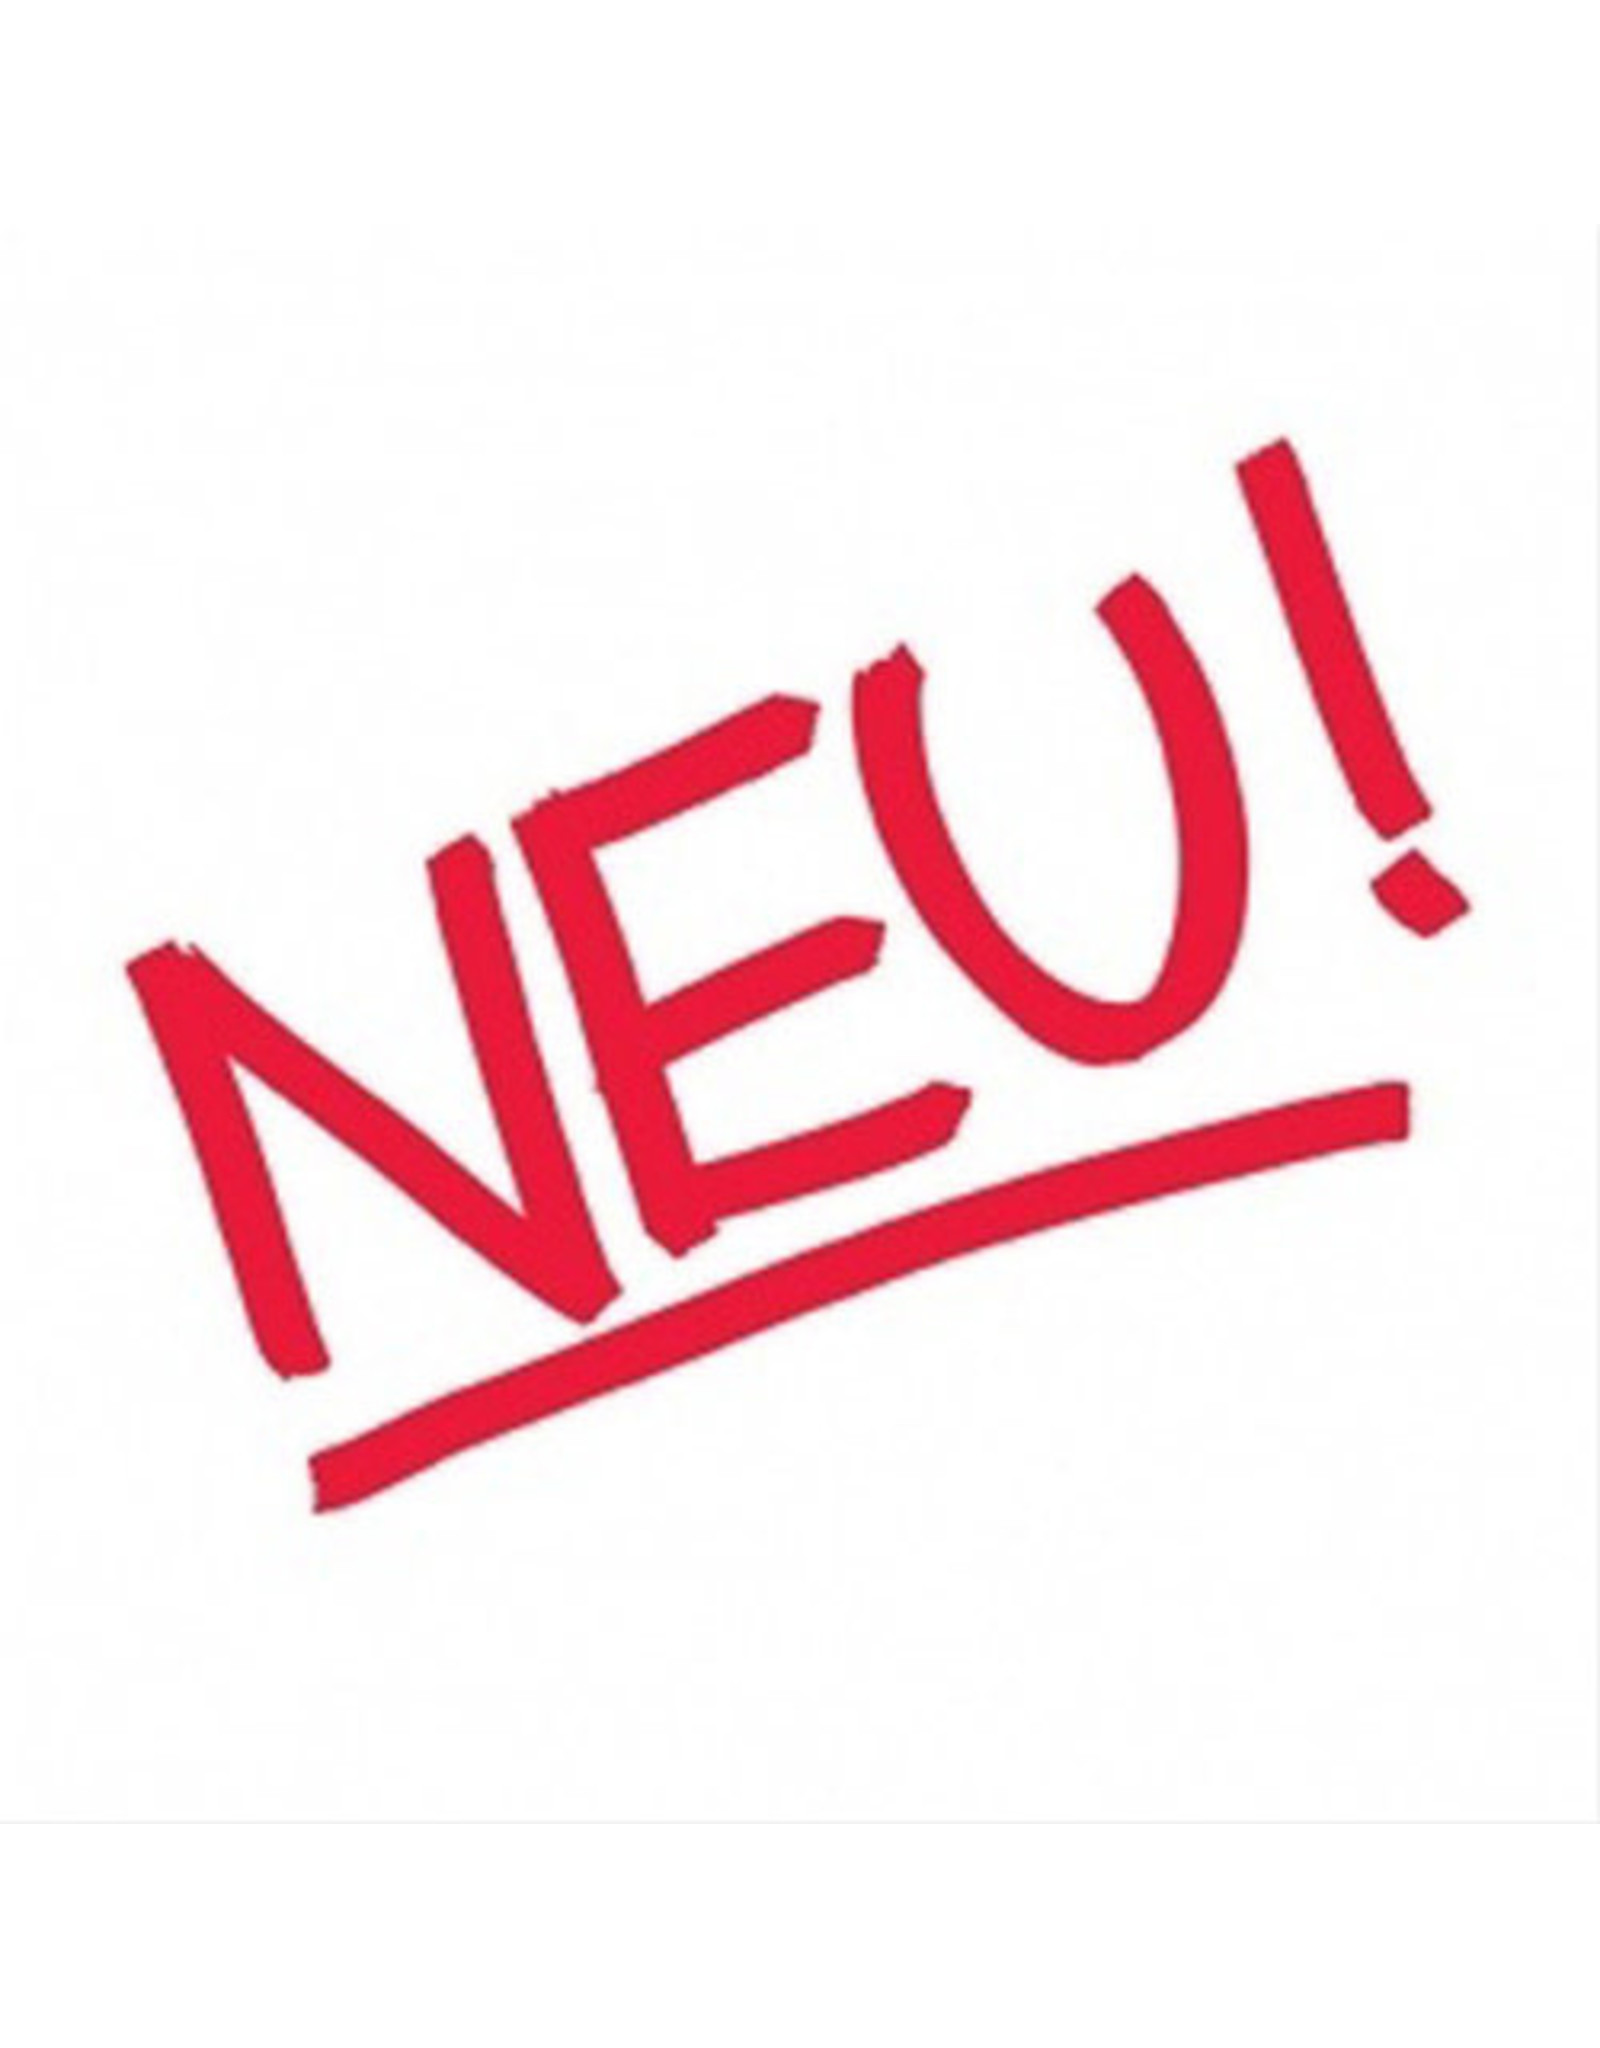 Groenland Neu!: Neu! (White Colored) LP